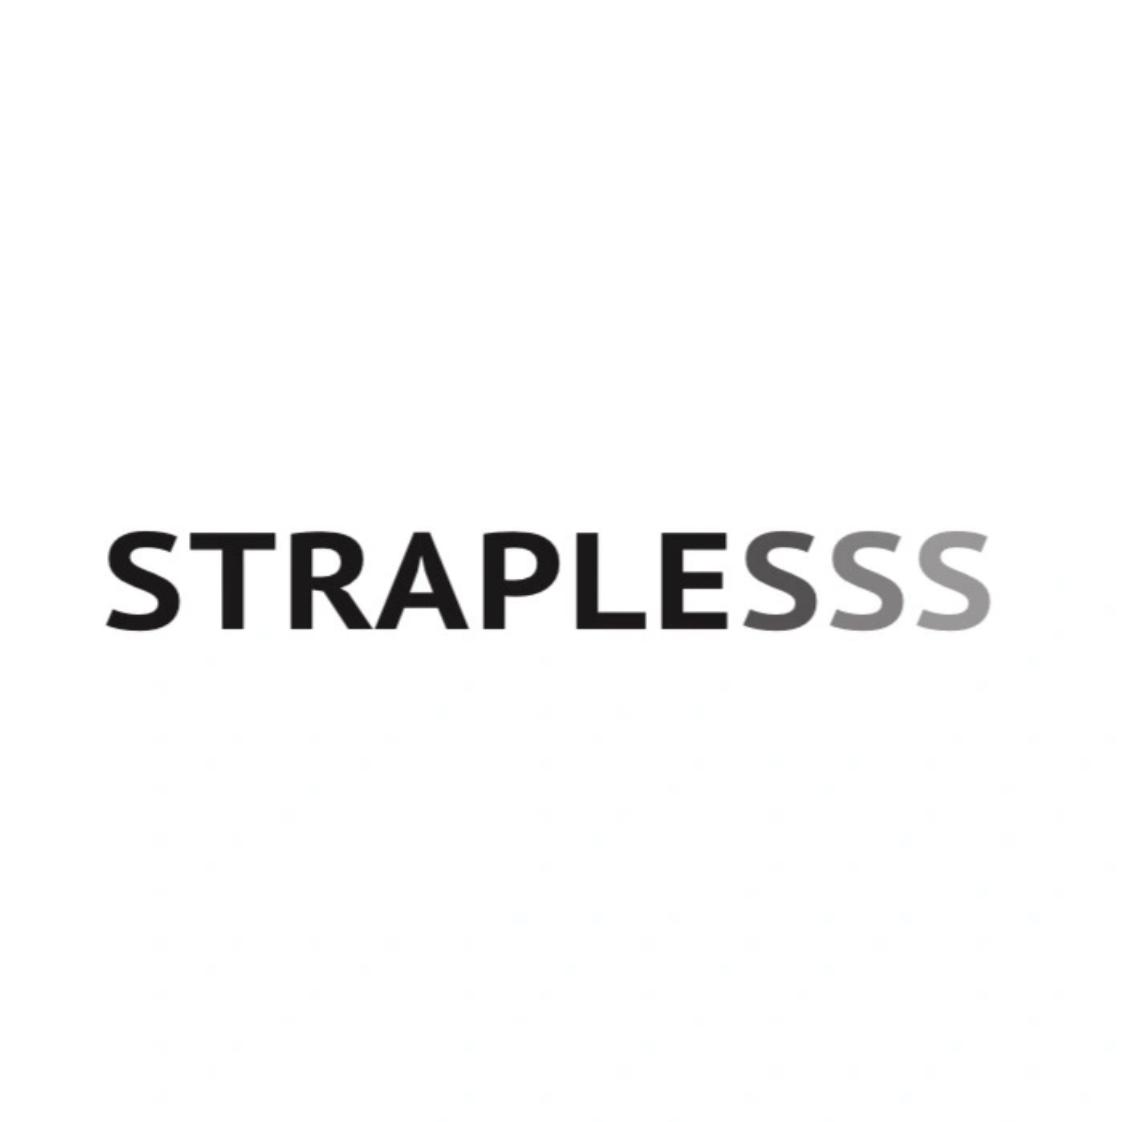 Straplesss